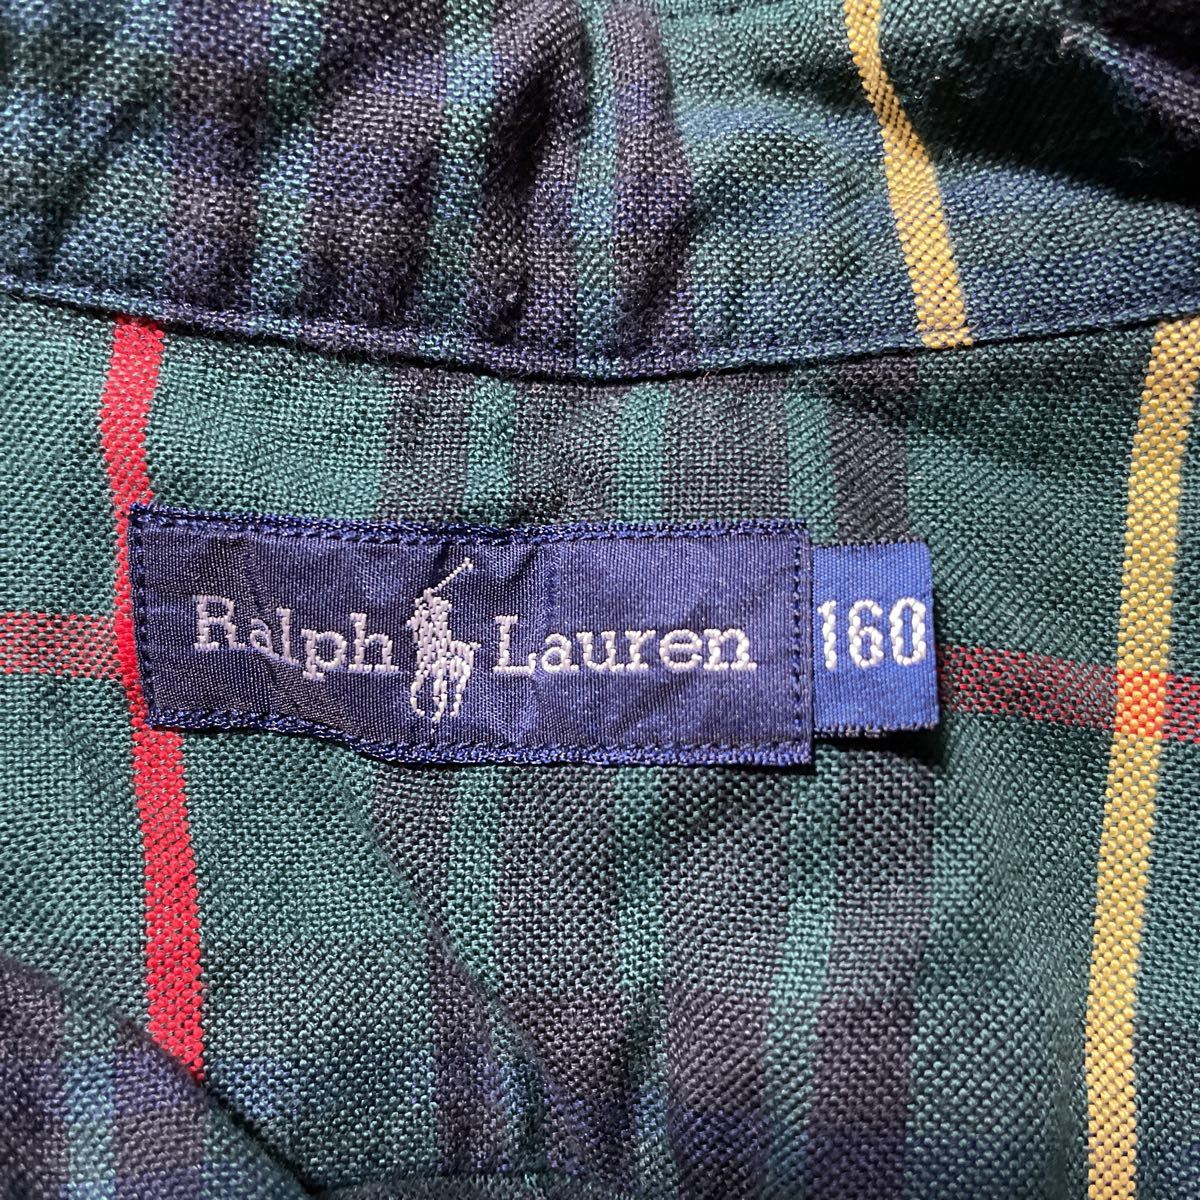  Ralph Lauren long sleeve shirt 160